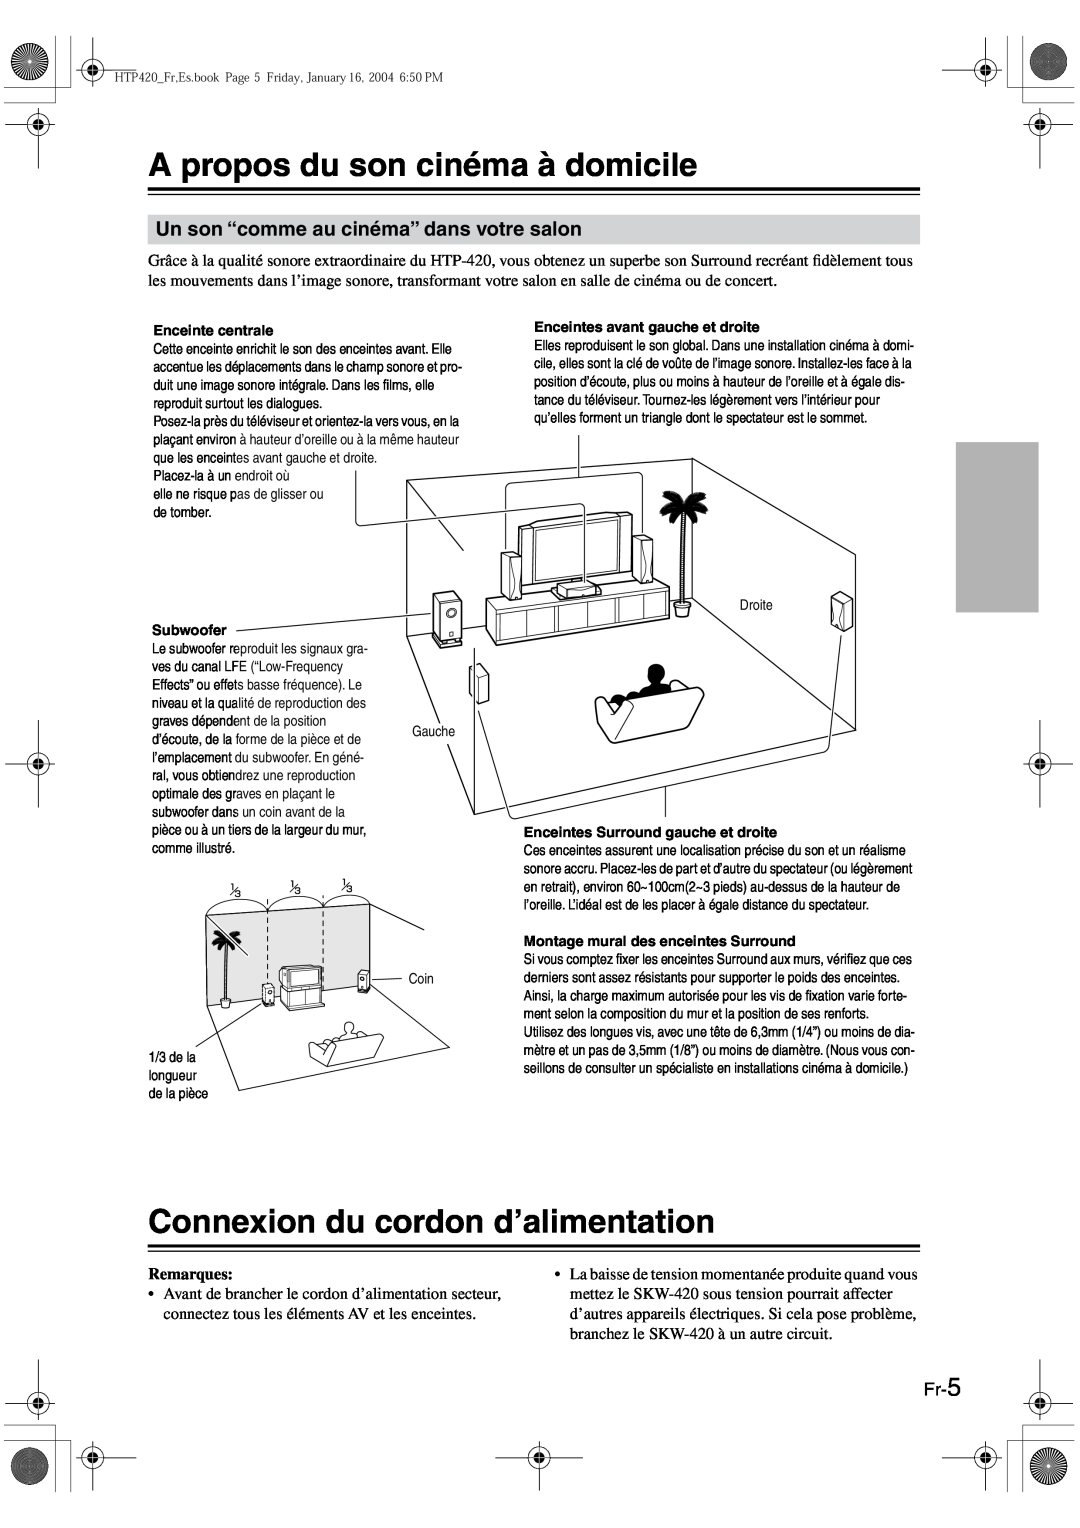 Onkyo HT-R420 manual A propos du son cinéma à domicile, Connexion du cordon d’alimentation, Fr-5 